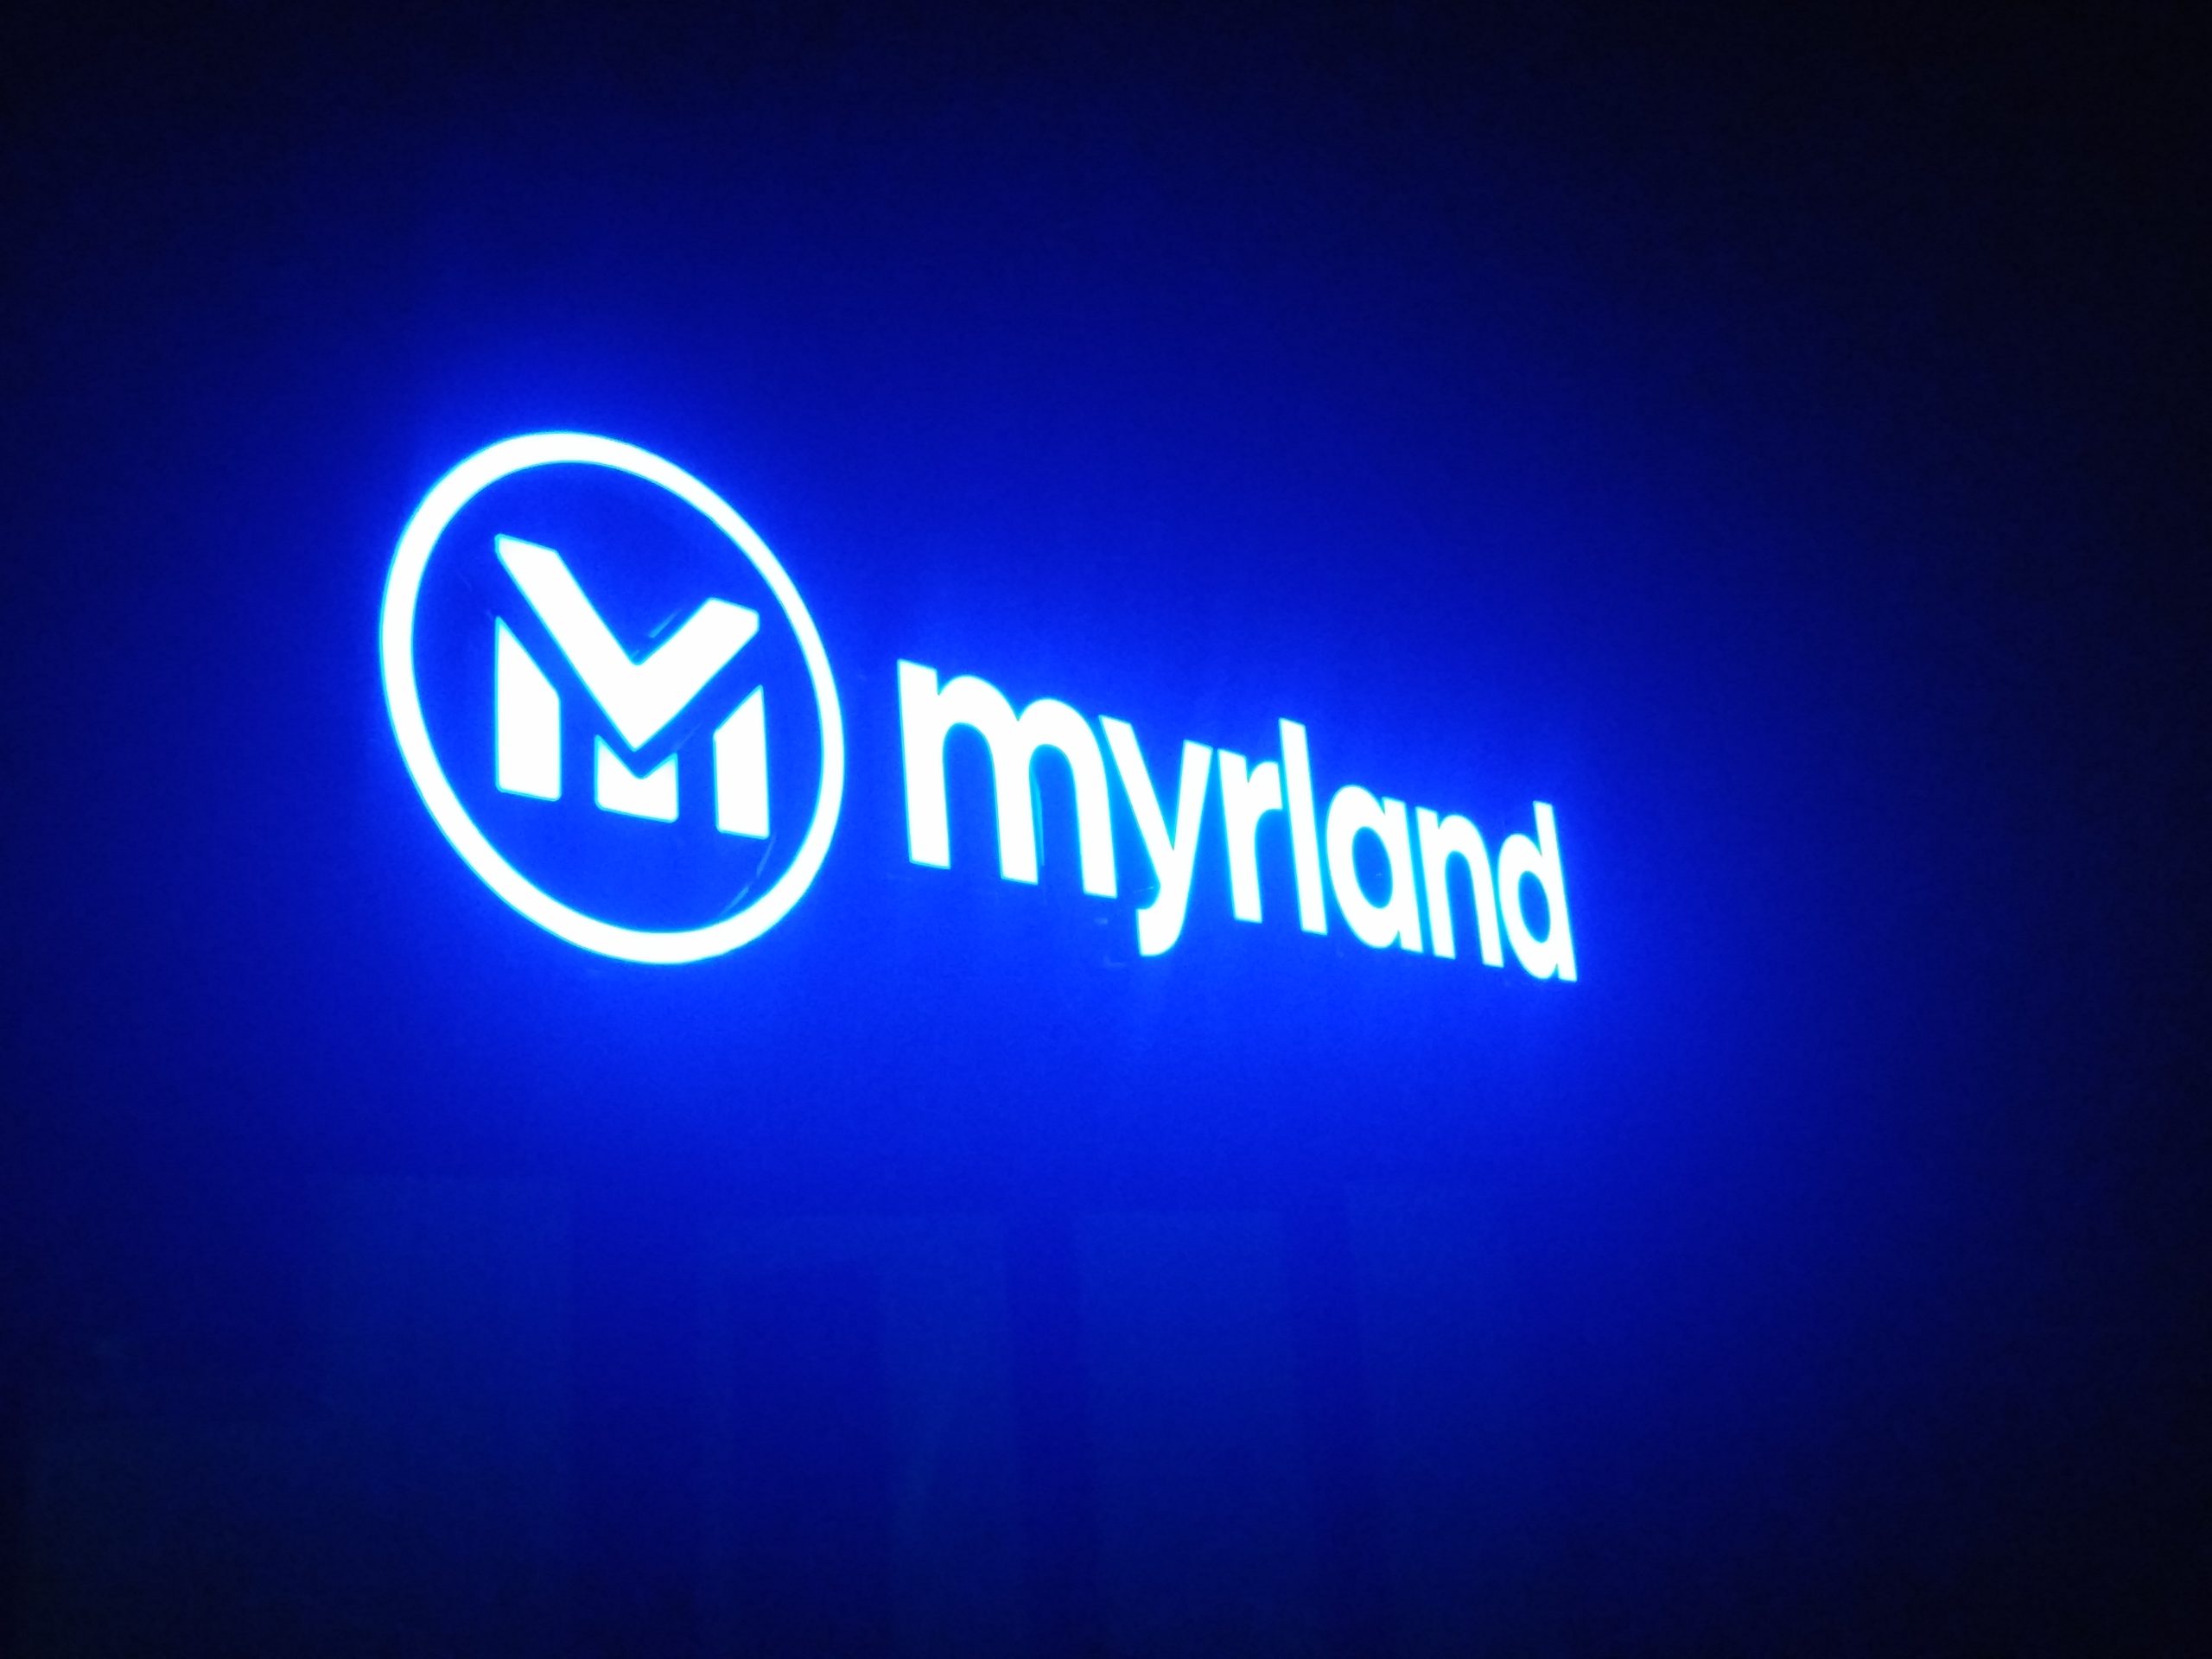 Realizacja reklamy Myrland